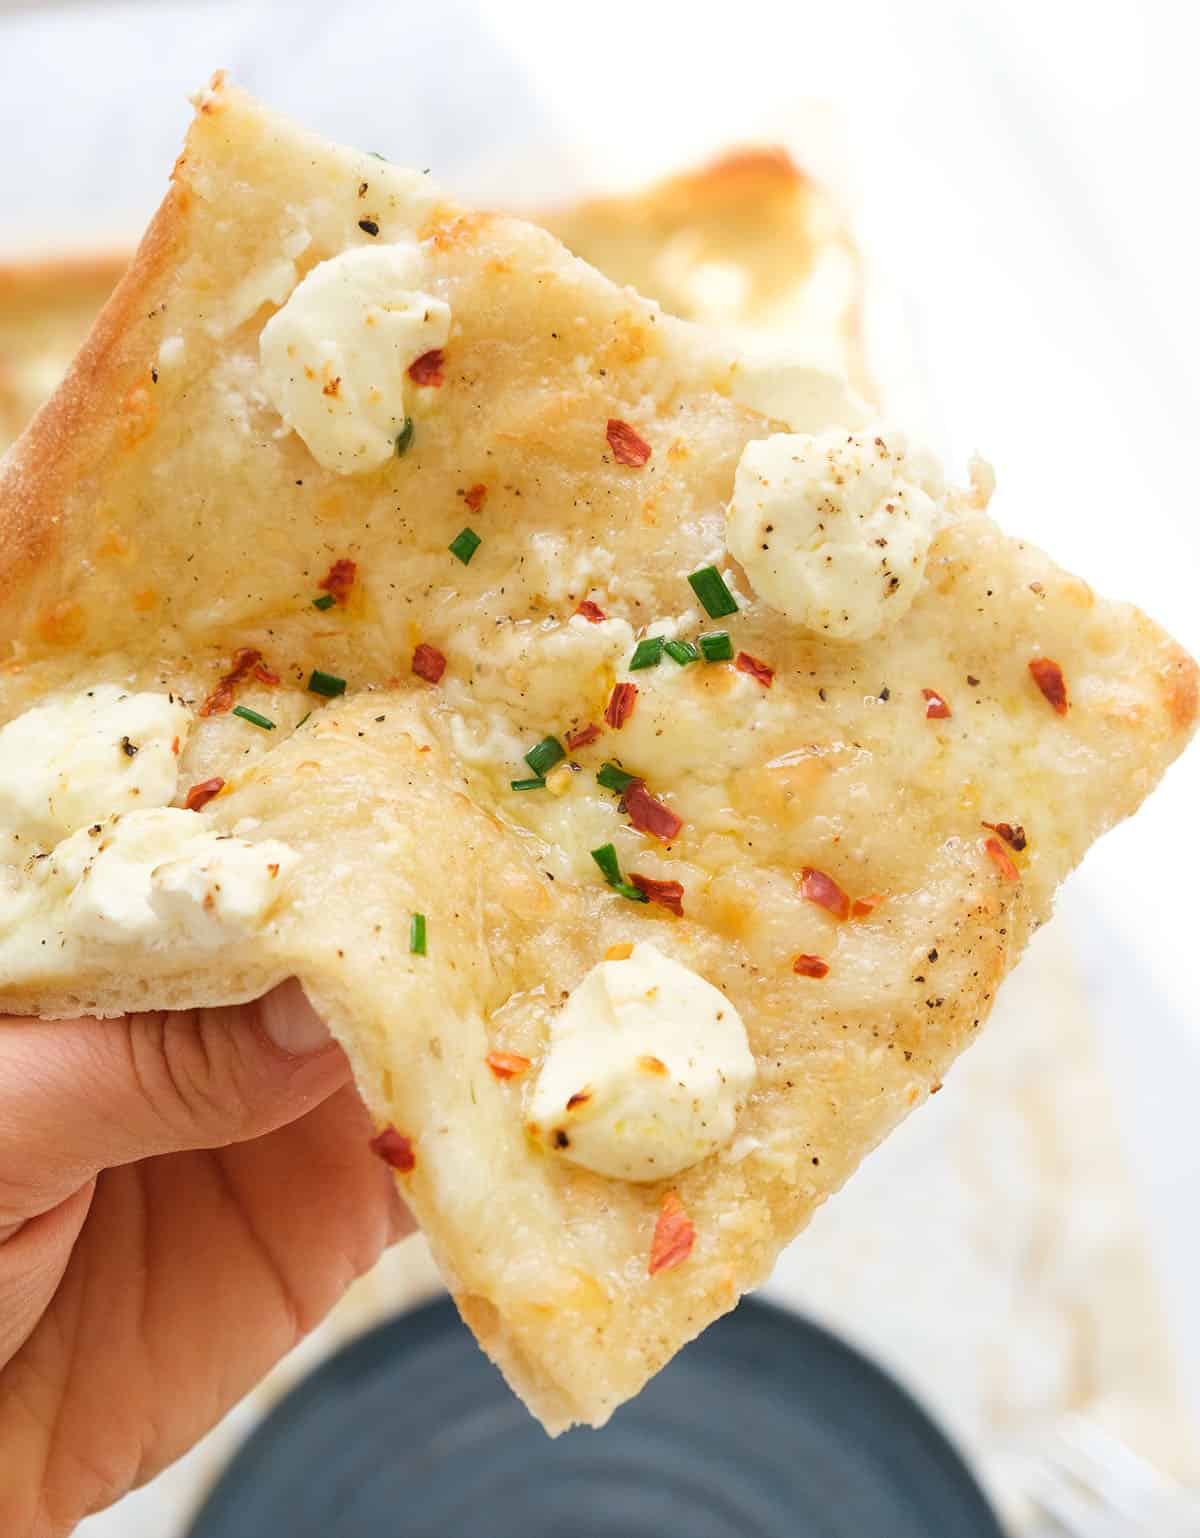 부드럽고 크리미한 식감을 보여주는 칠리 플레이크가 들어간 크림치즈 피자 한 조각.